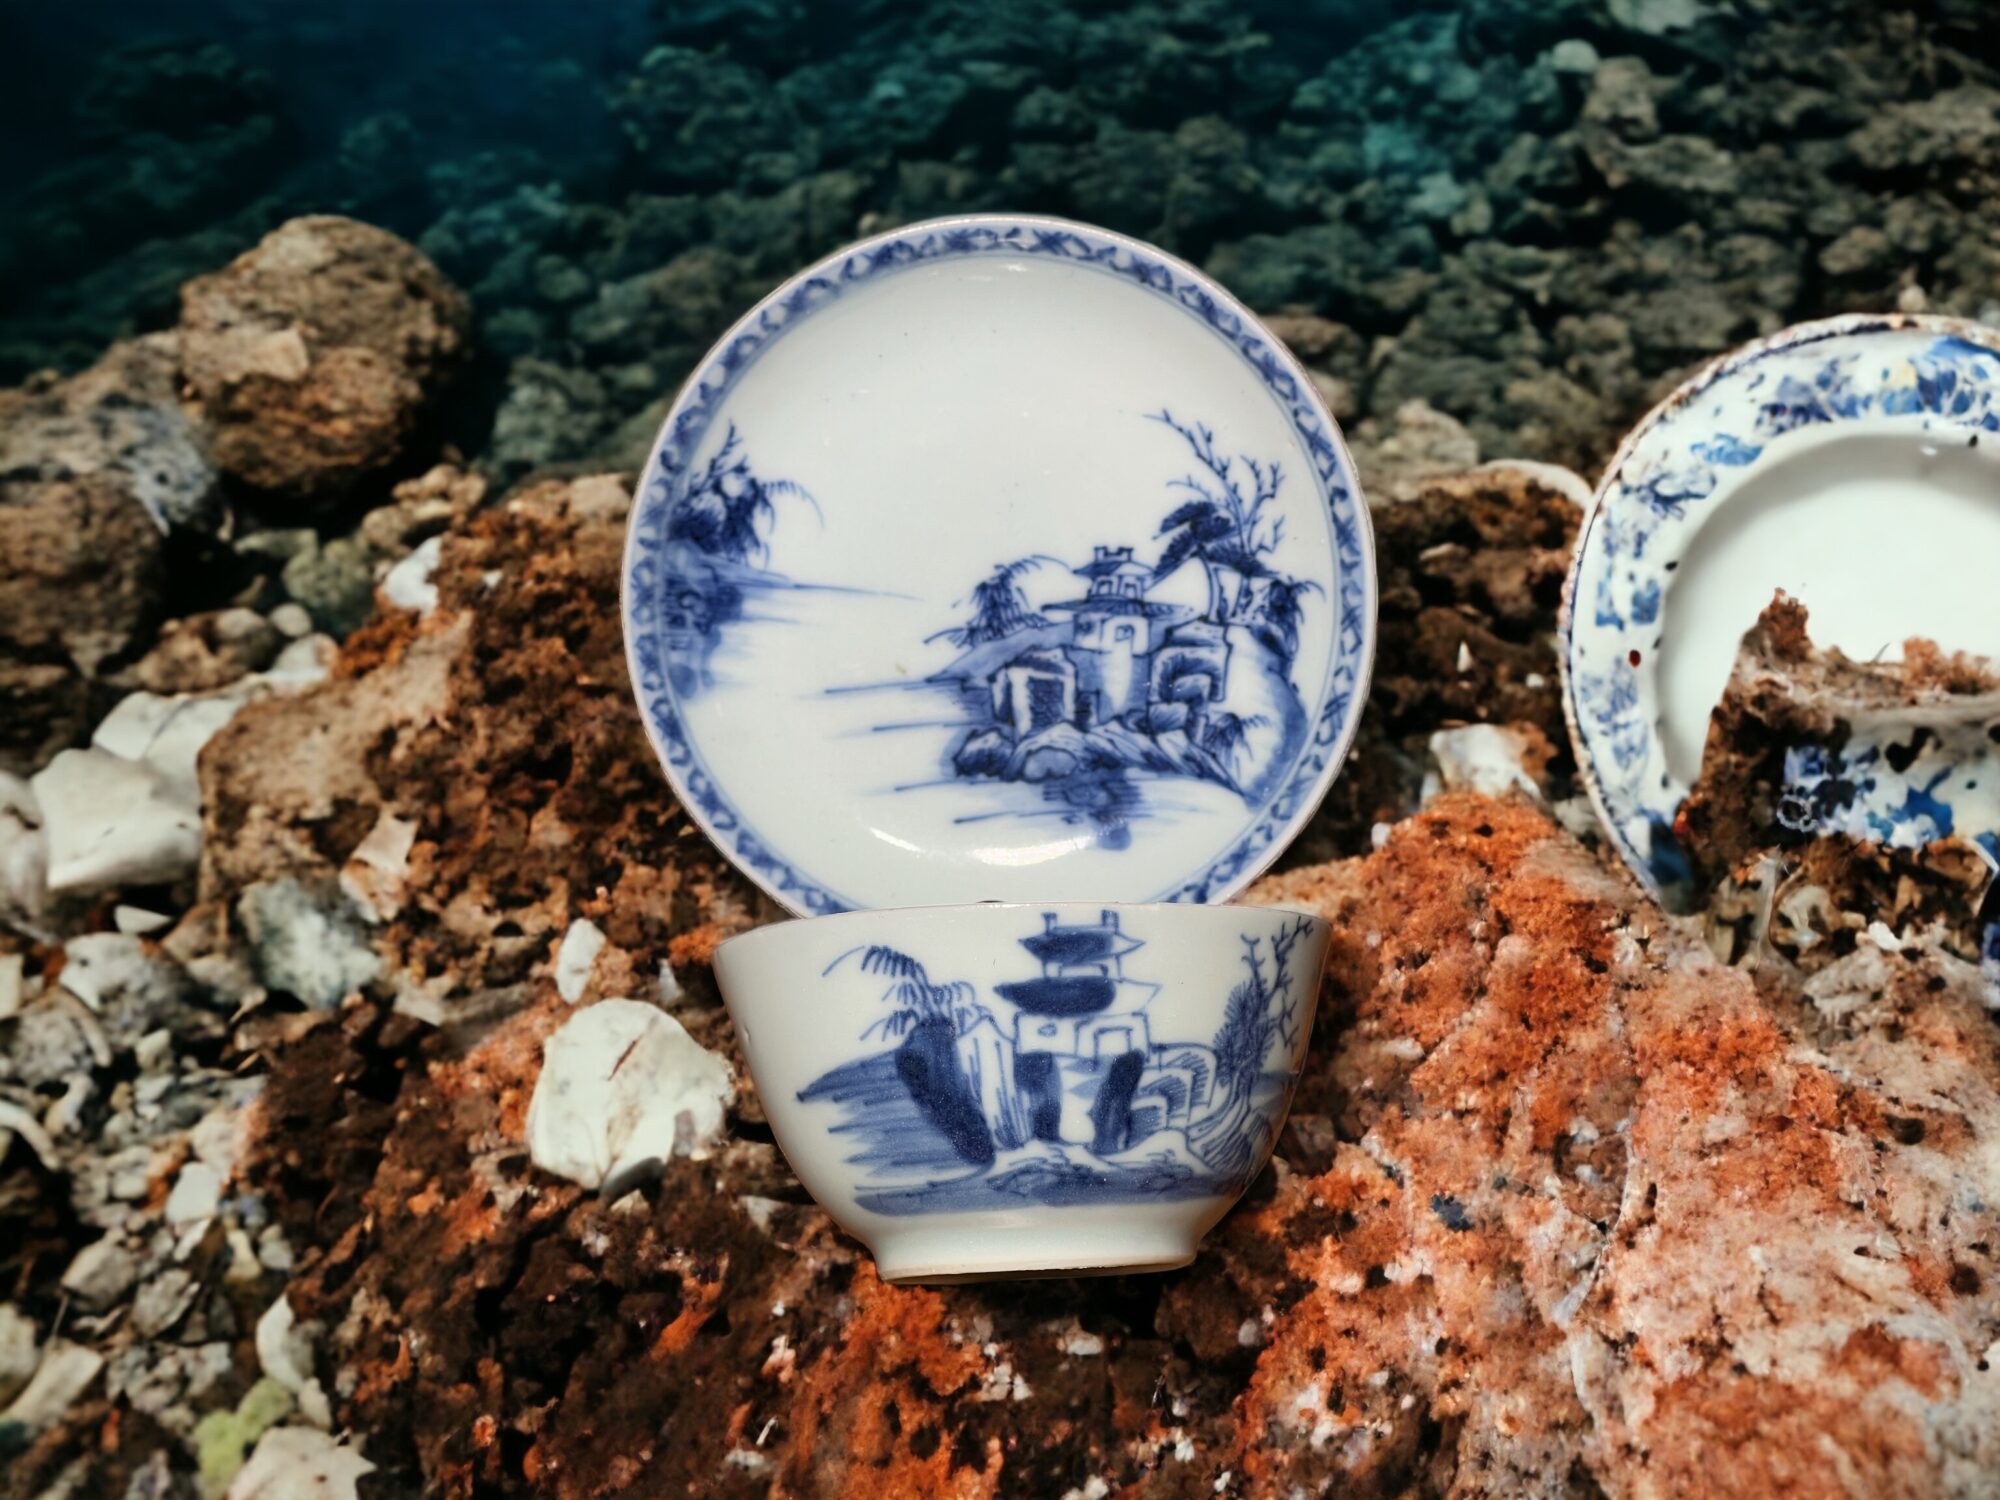 Shipwreck Ceramics - the Nankin Cargo c.1750